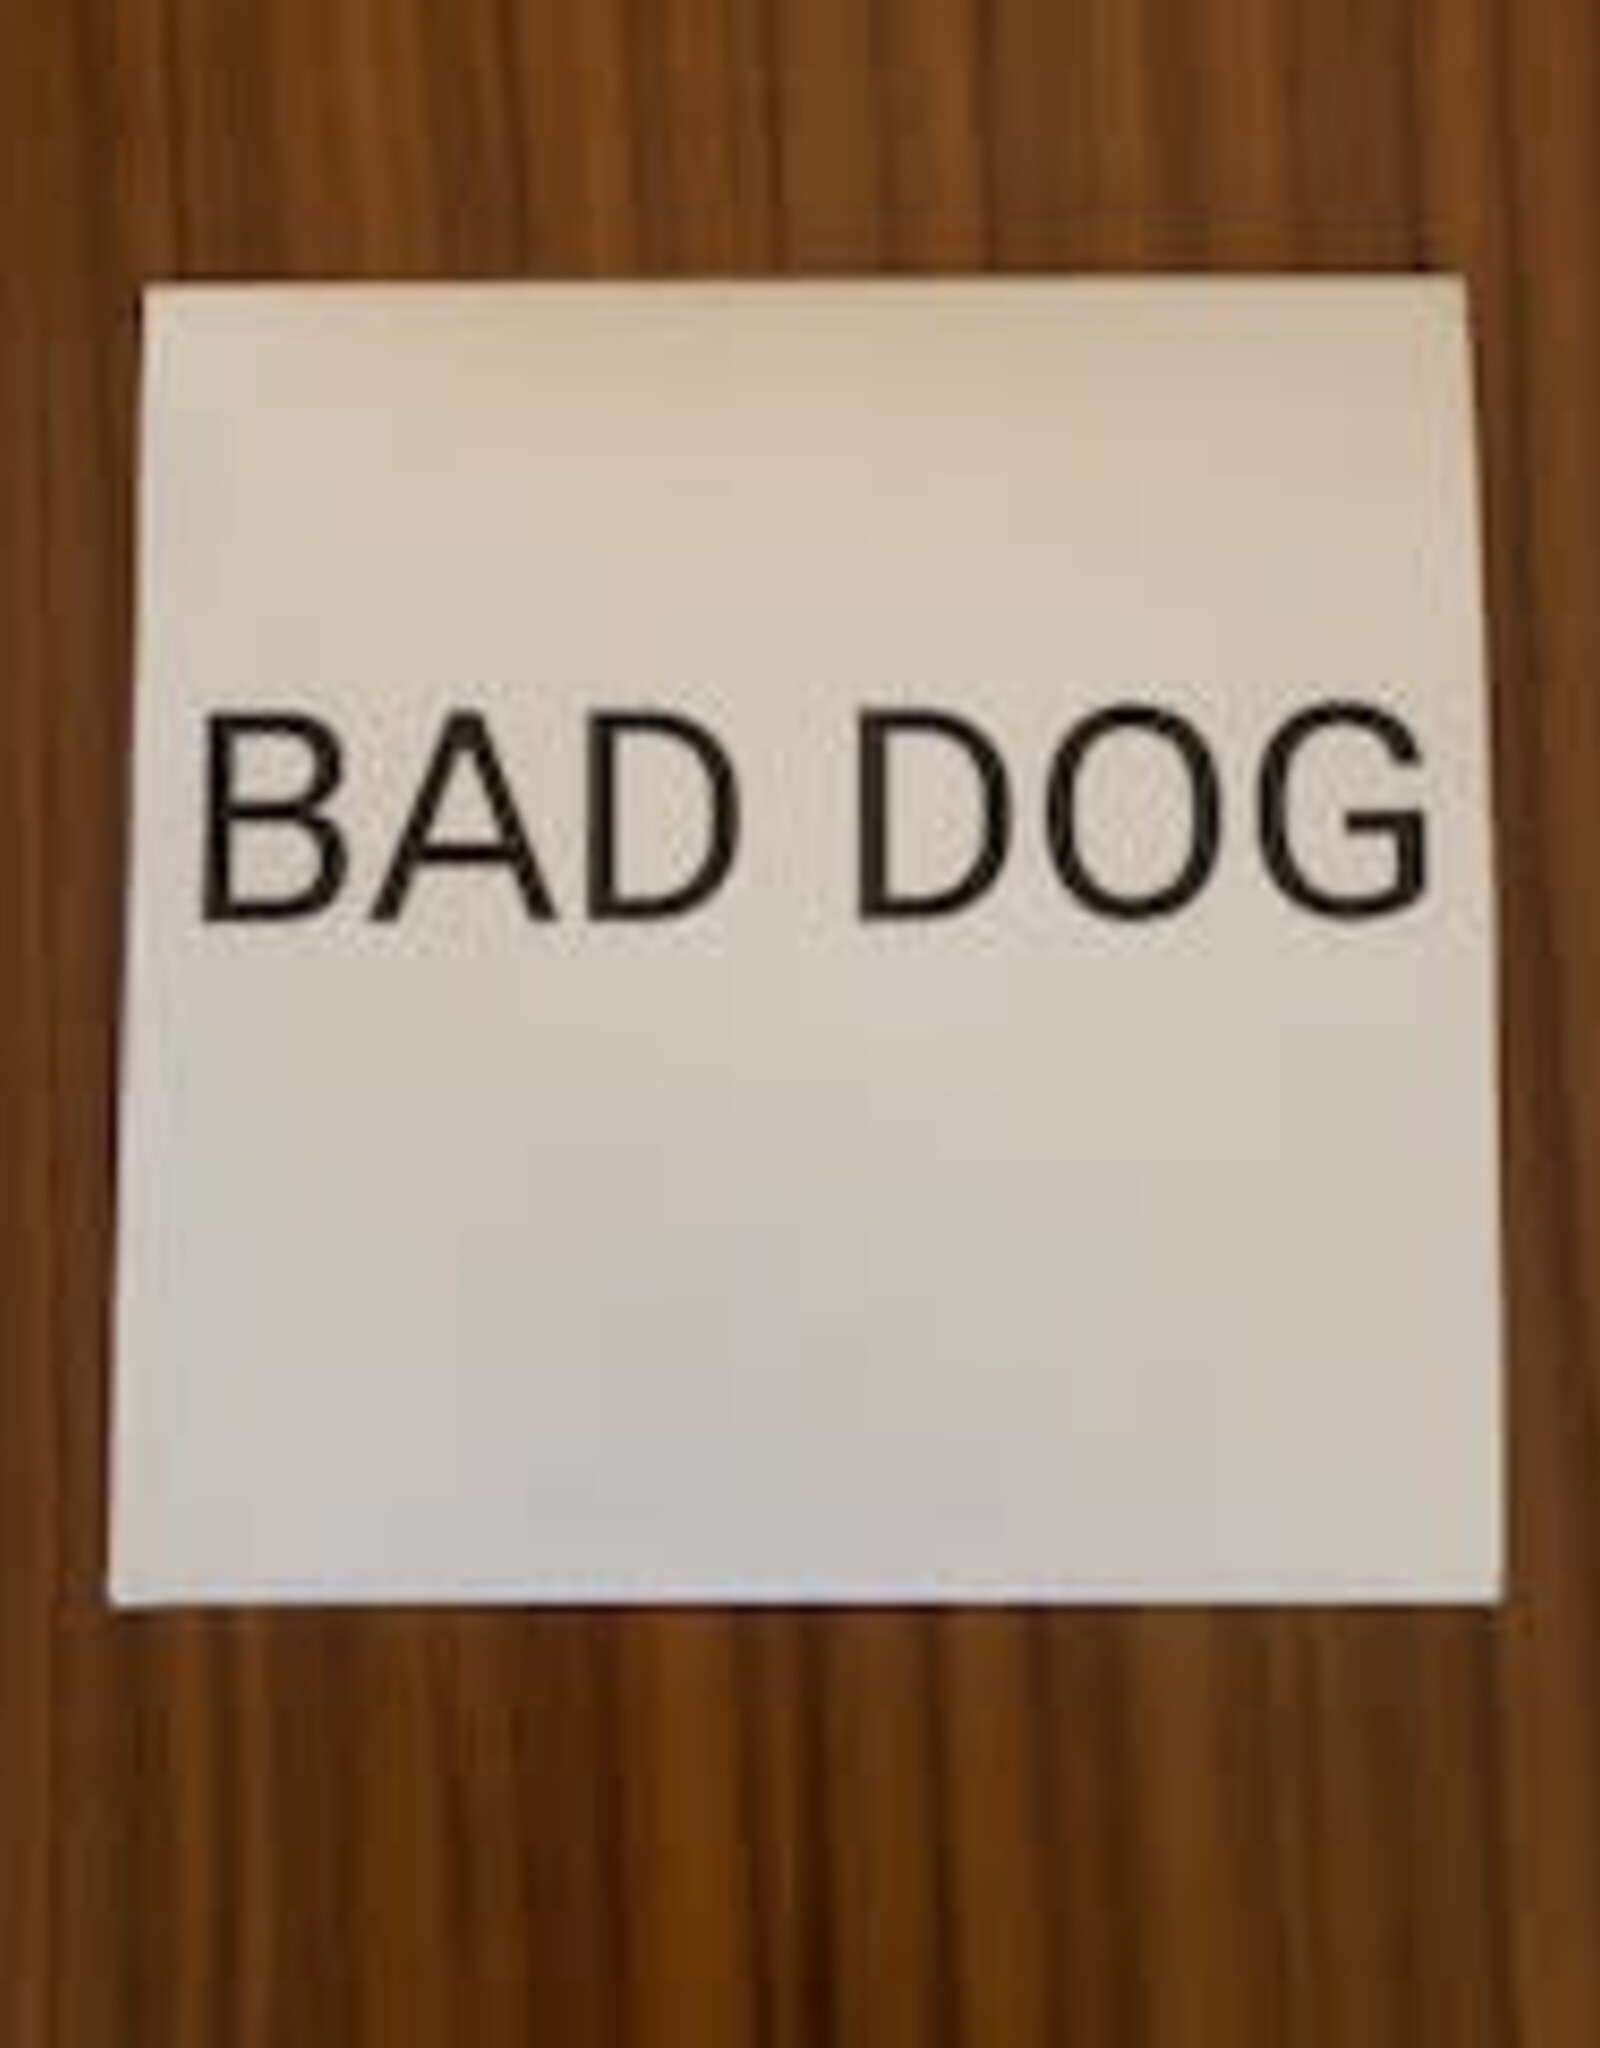 Bad Dog - The Jukebox of Regret